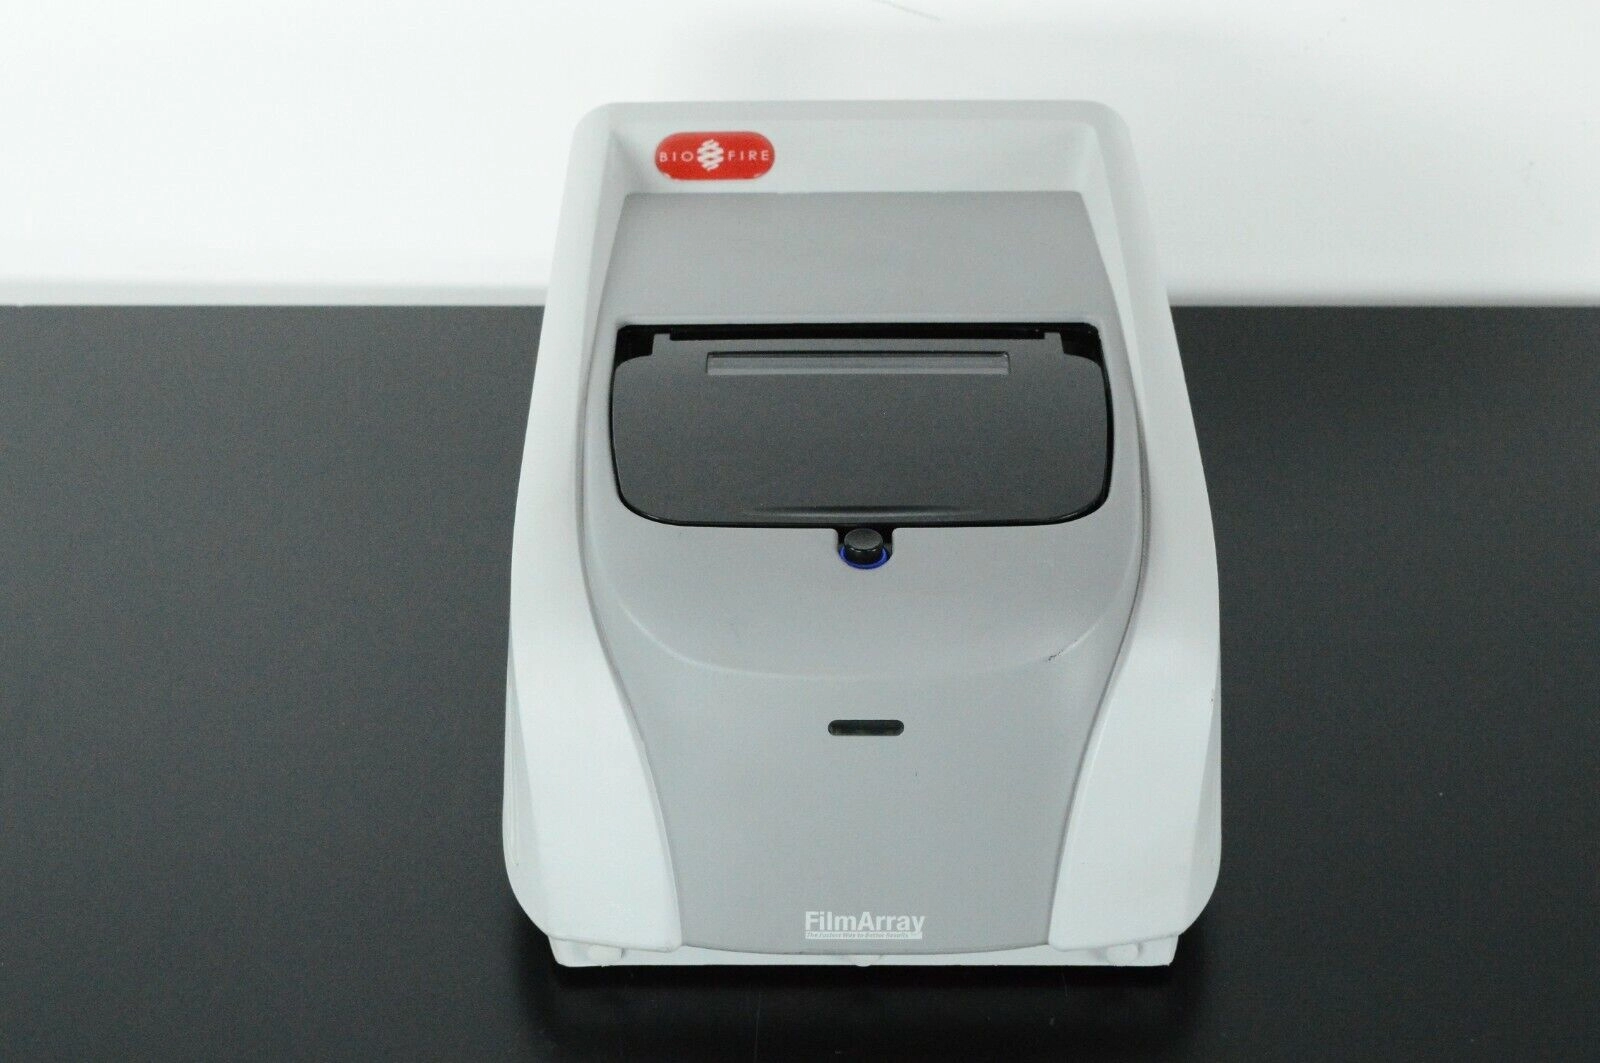 BioFire FilmArray 1.0 MultiPlex PCR System